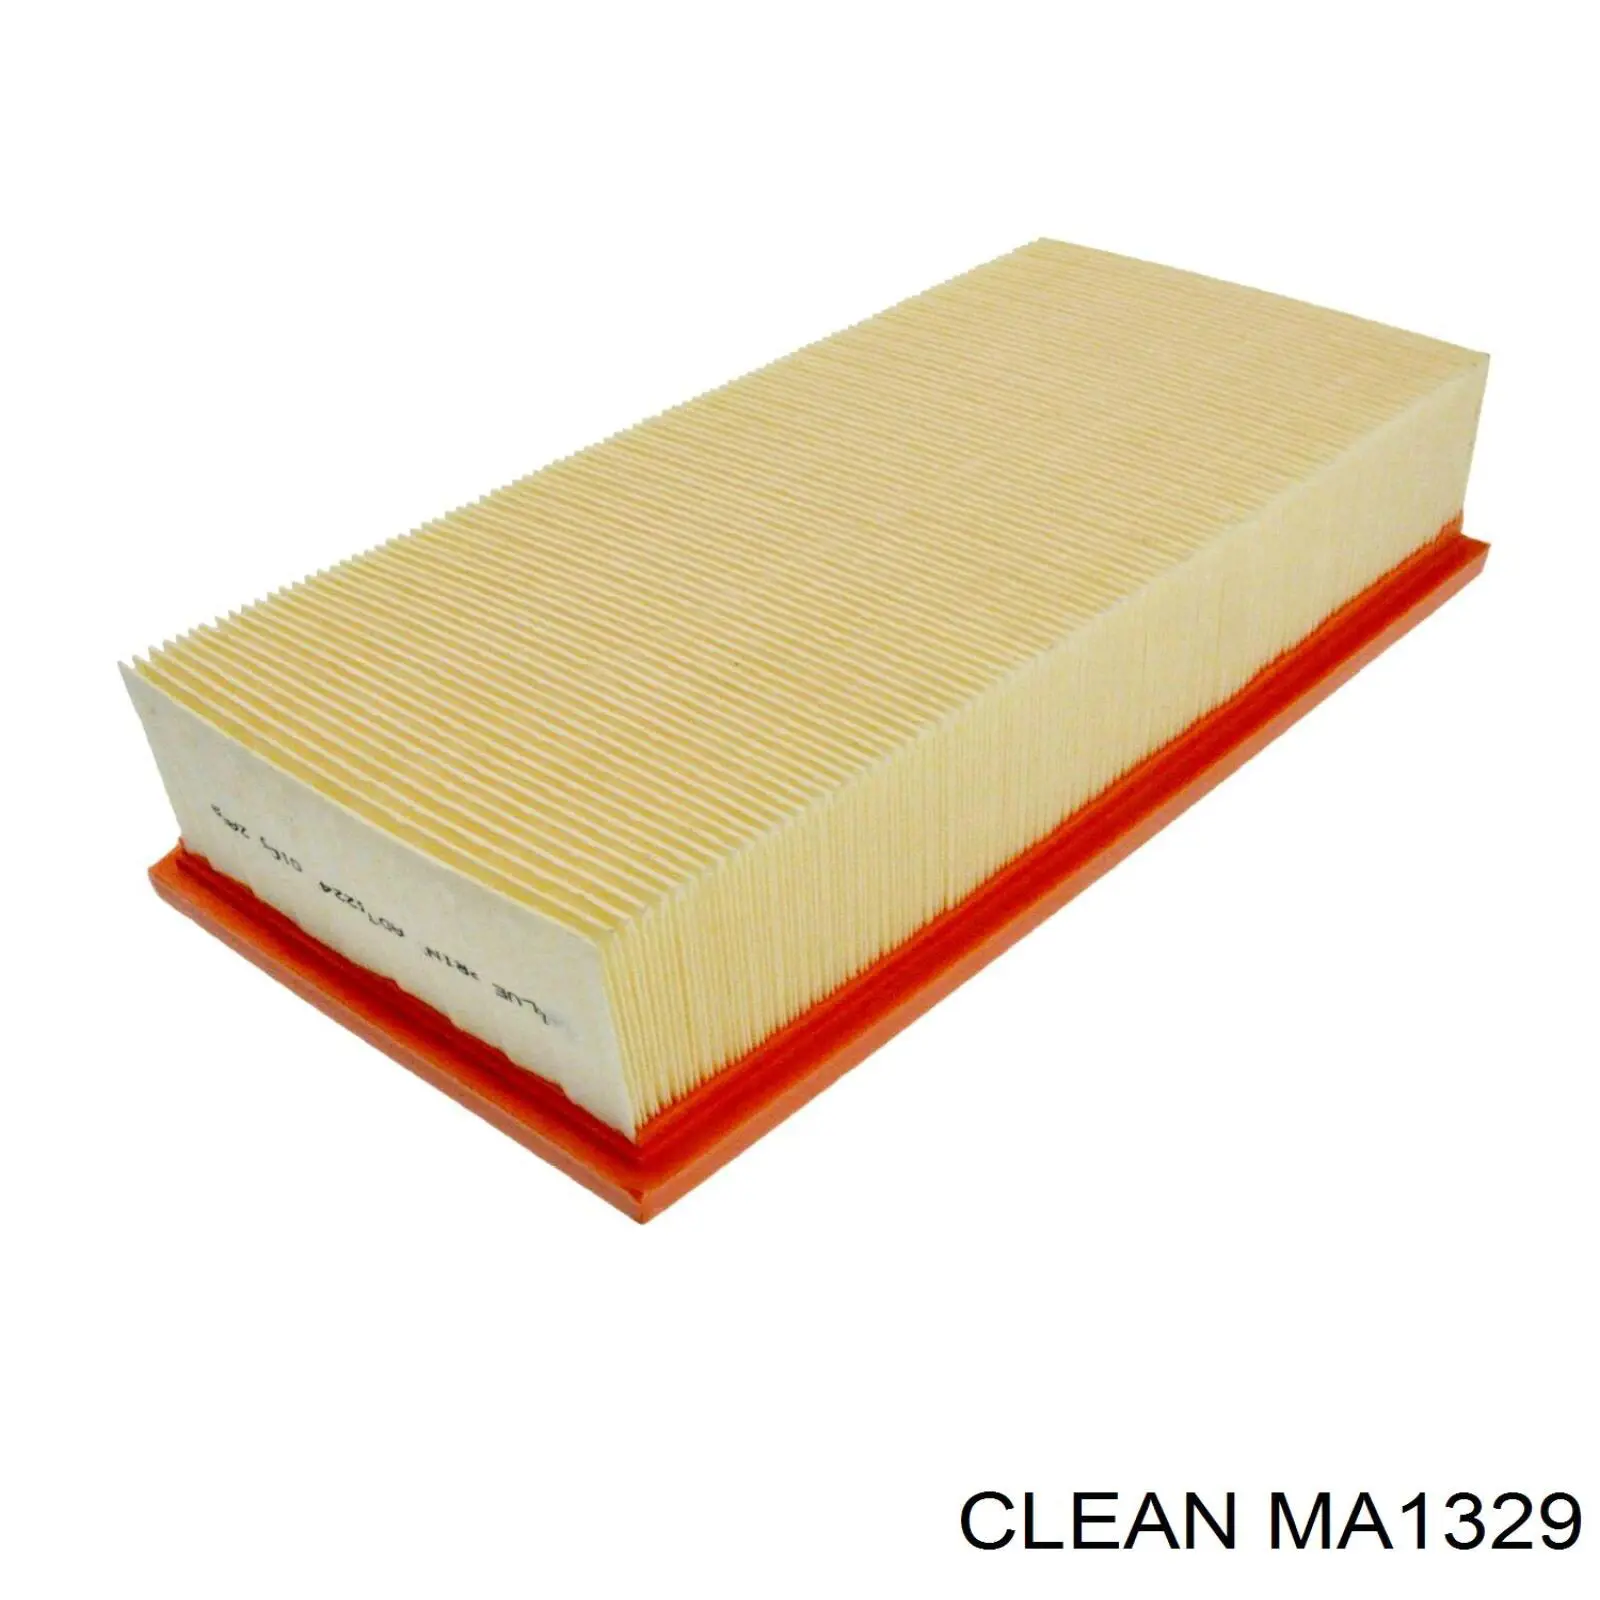 MA1329 Clean filtro de aire